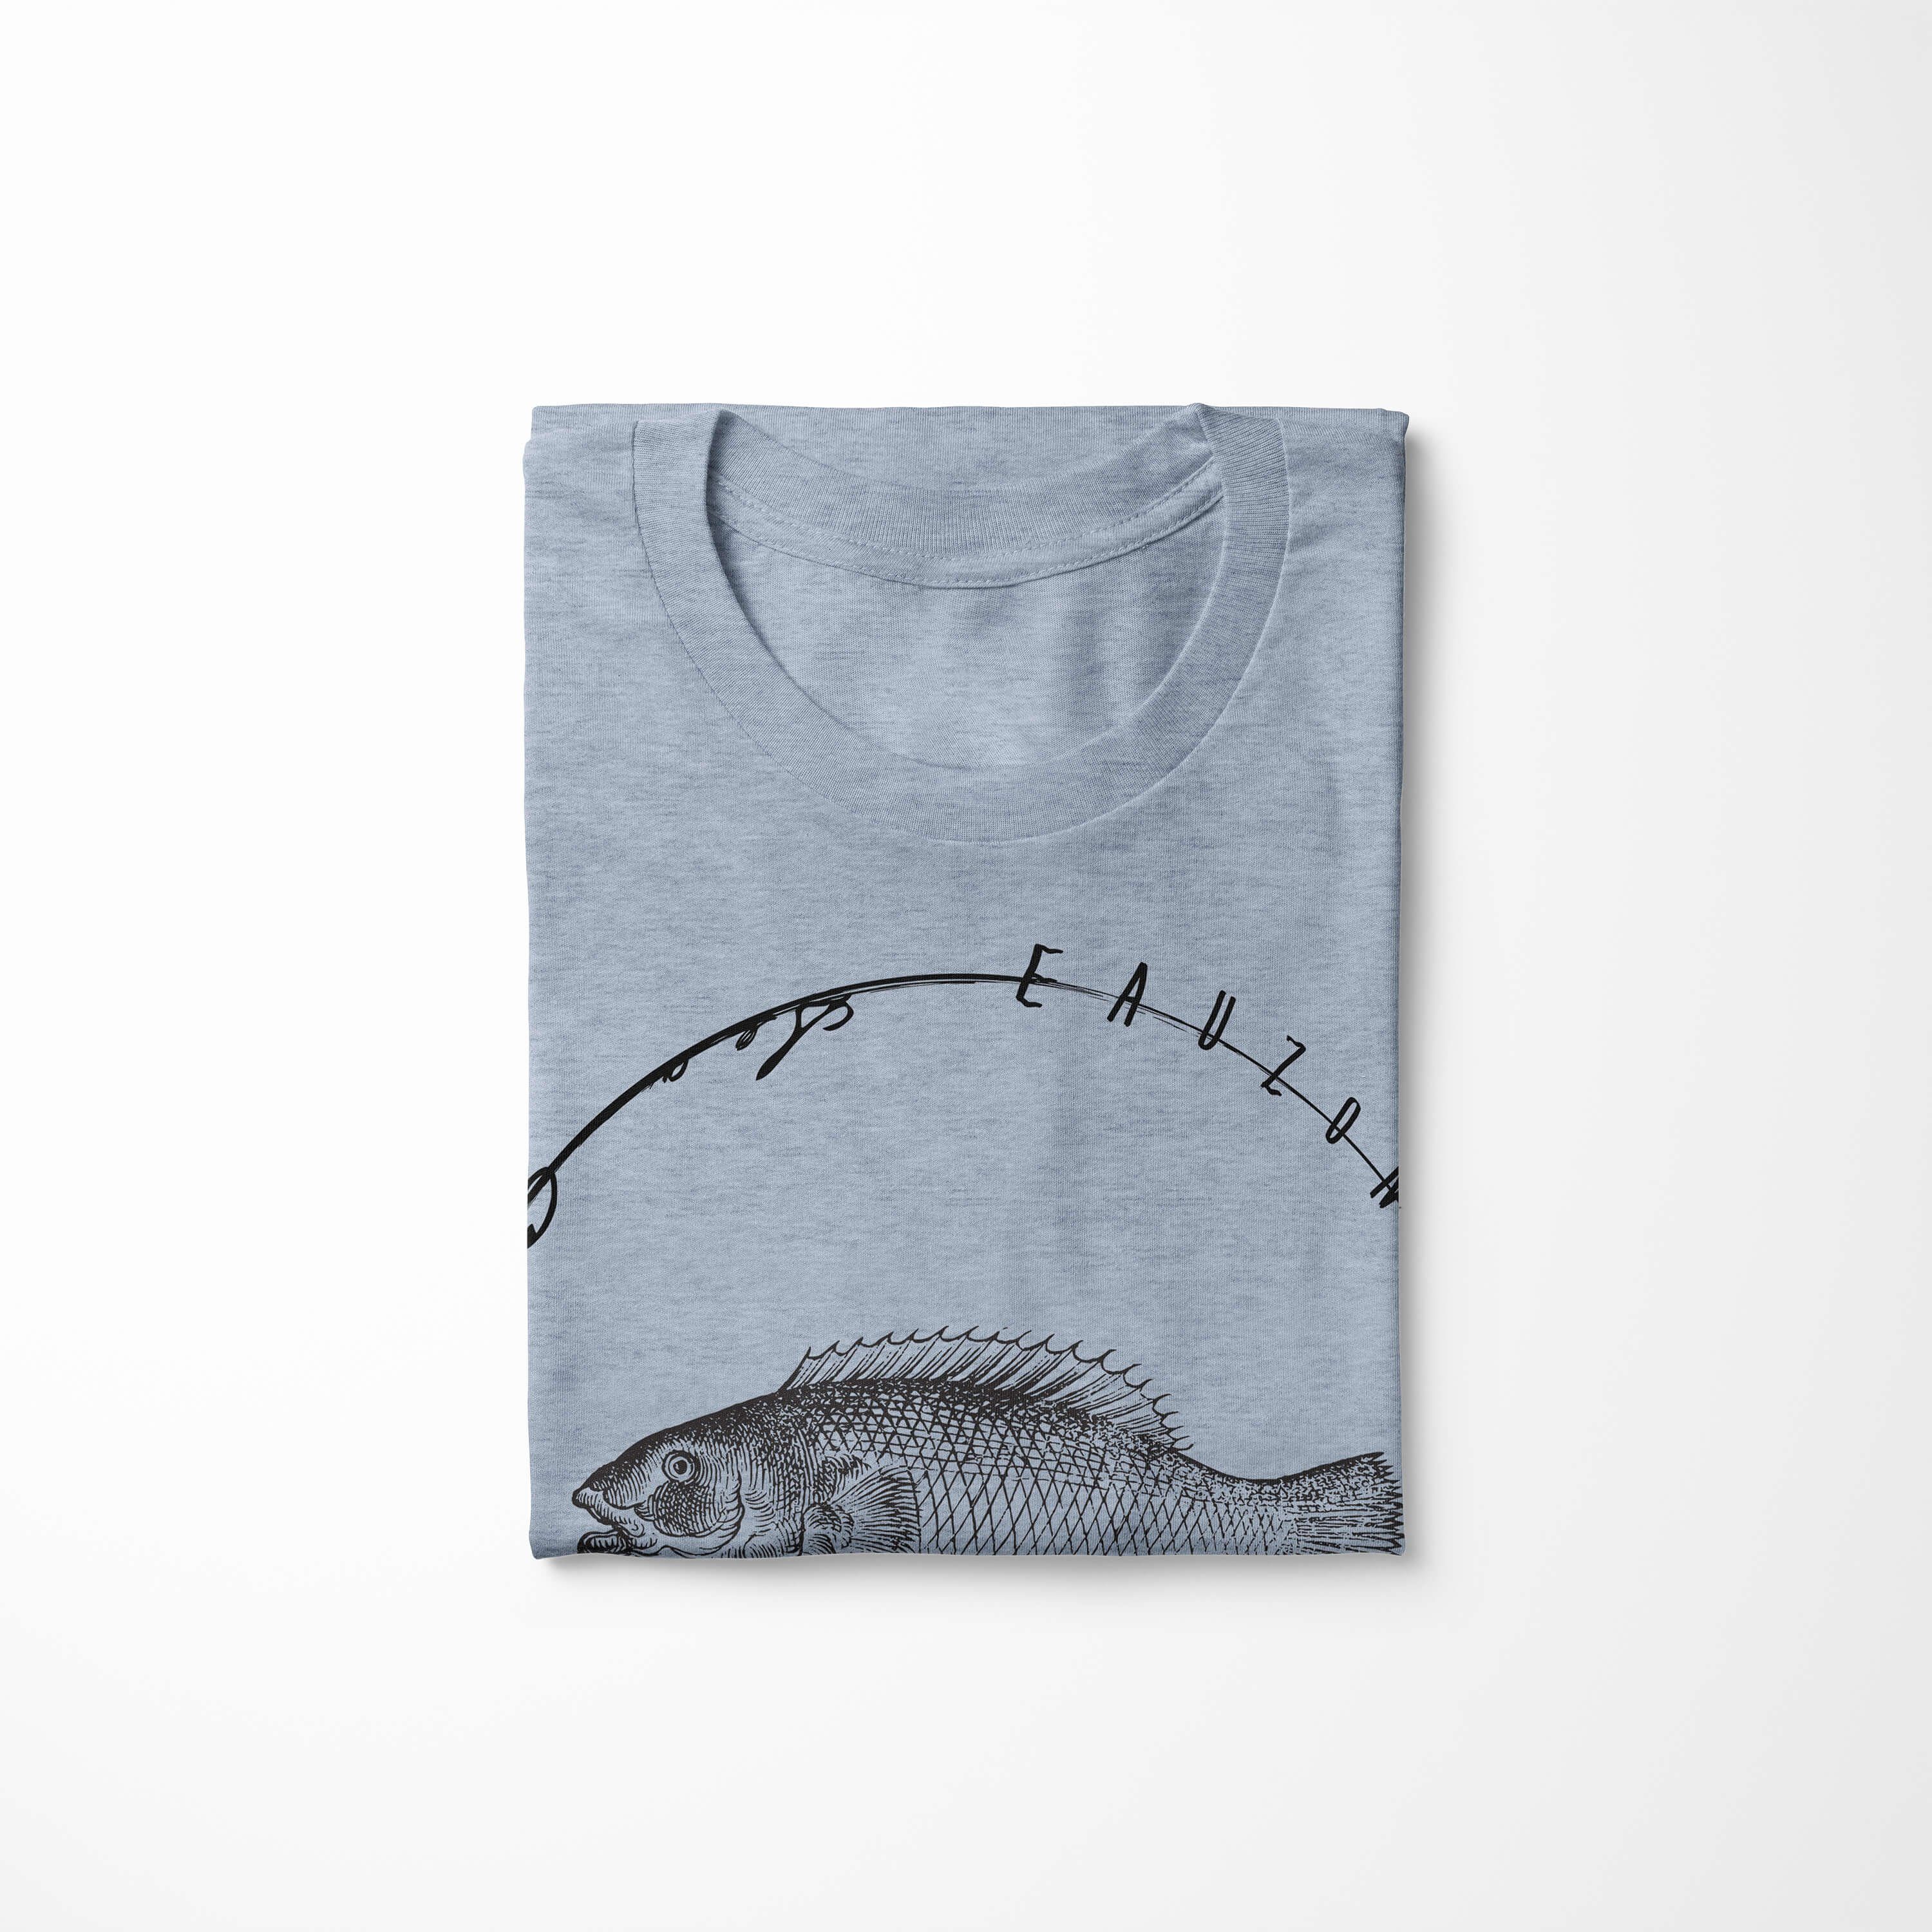 Sea feine / T-Shirt T-Shirt und Art Stonewash Serie: sportlicher Creatures, Schnitt Denim Sea Fische - Struktur 041 Sinus Tiefsee